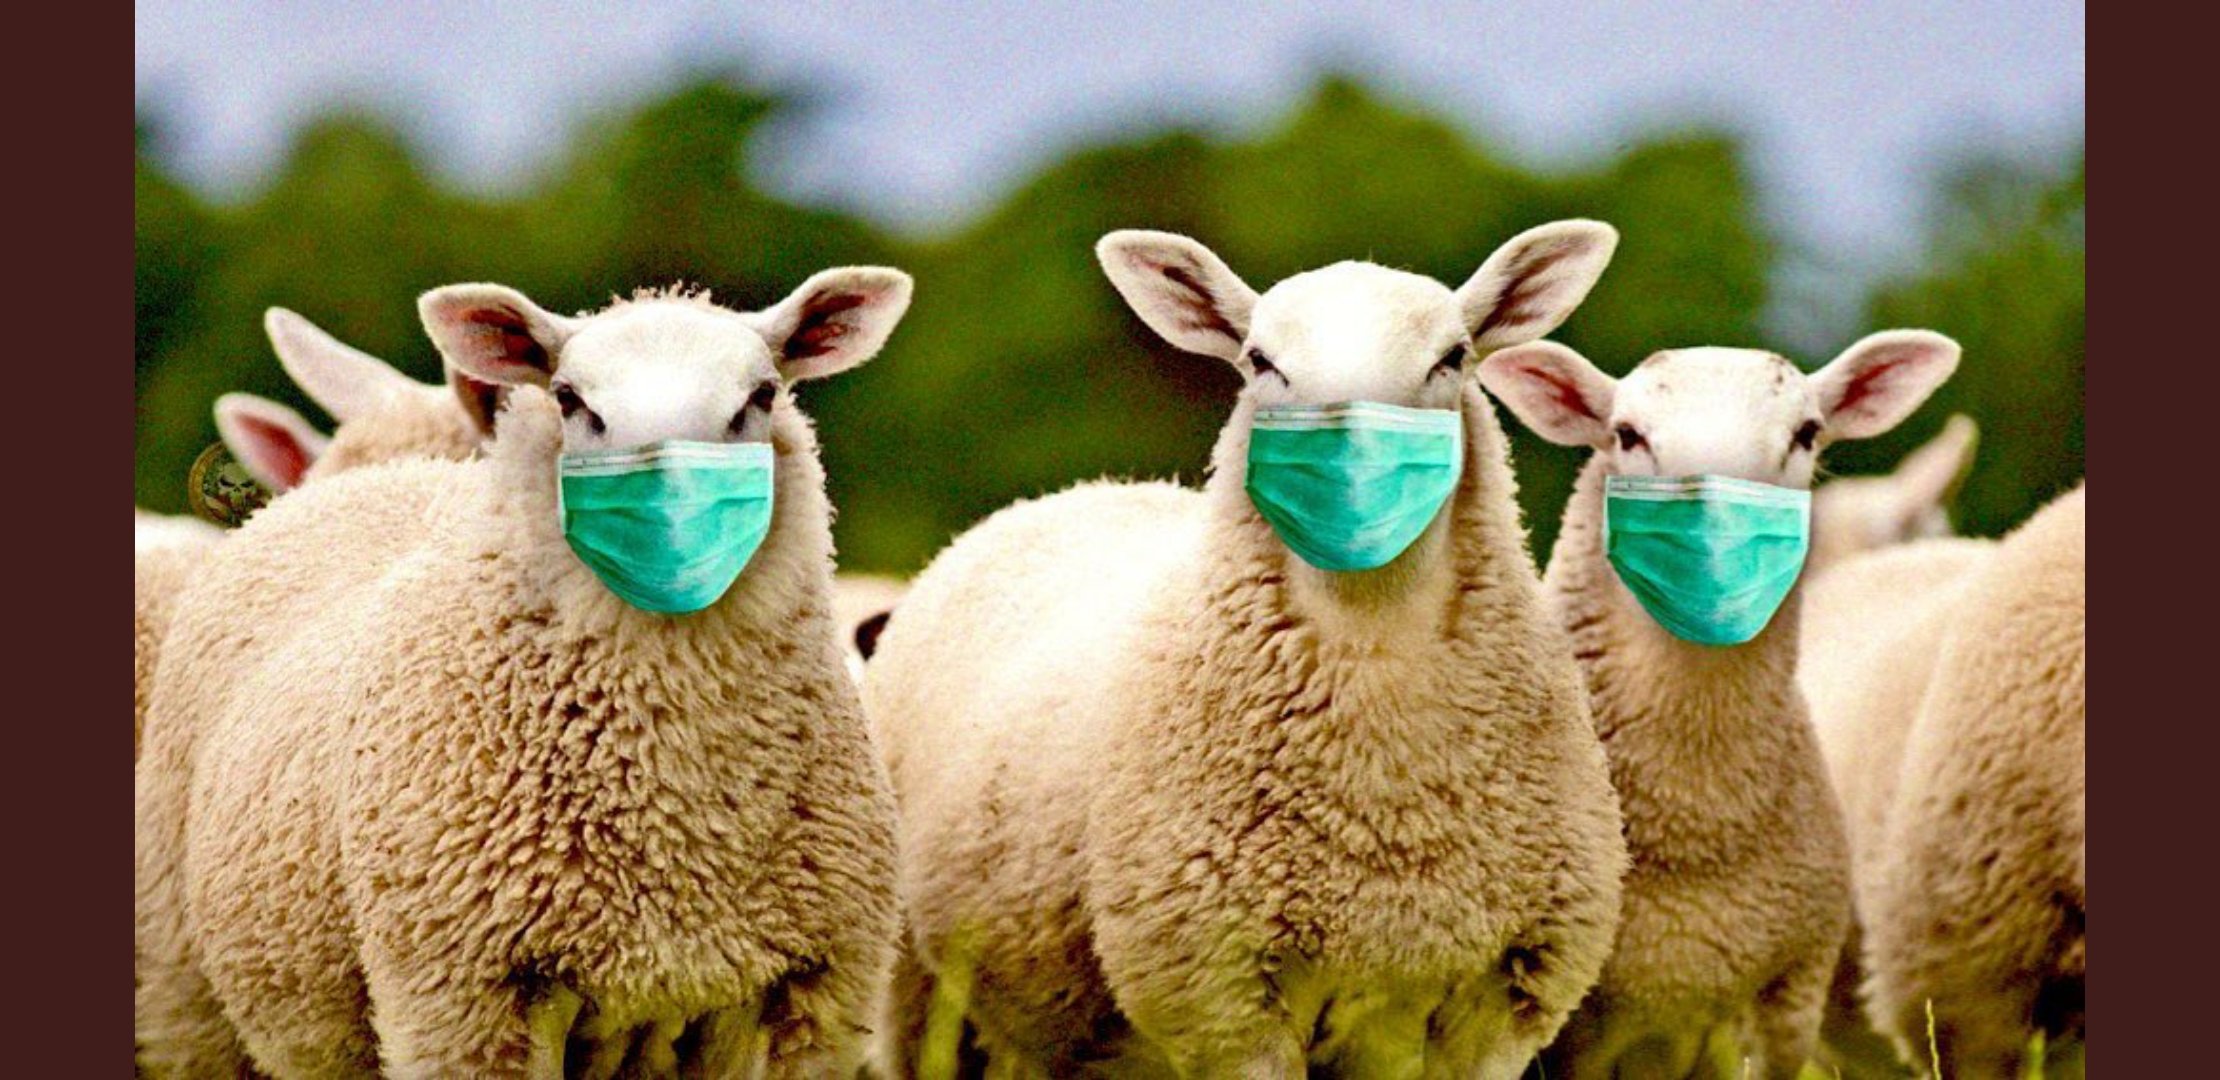 5-sheep-masks.jpg